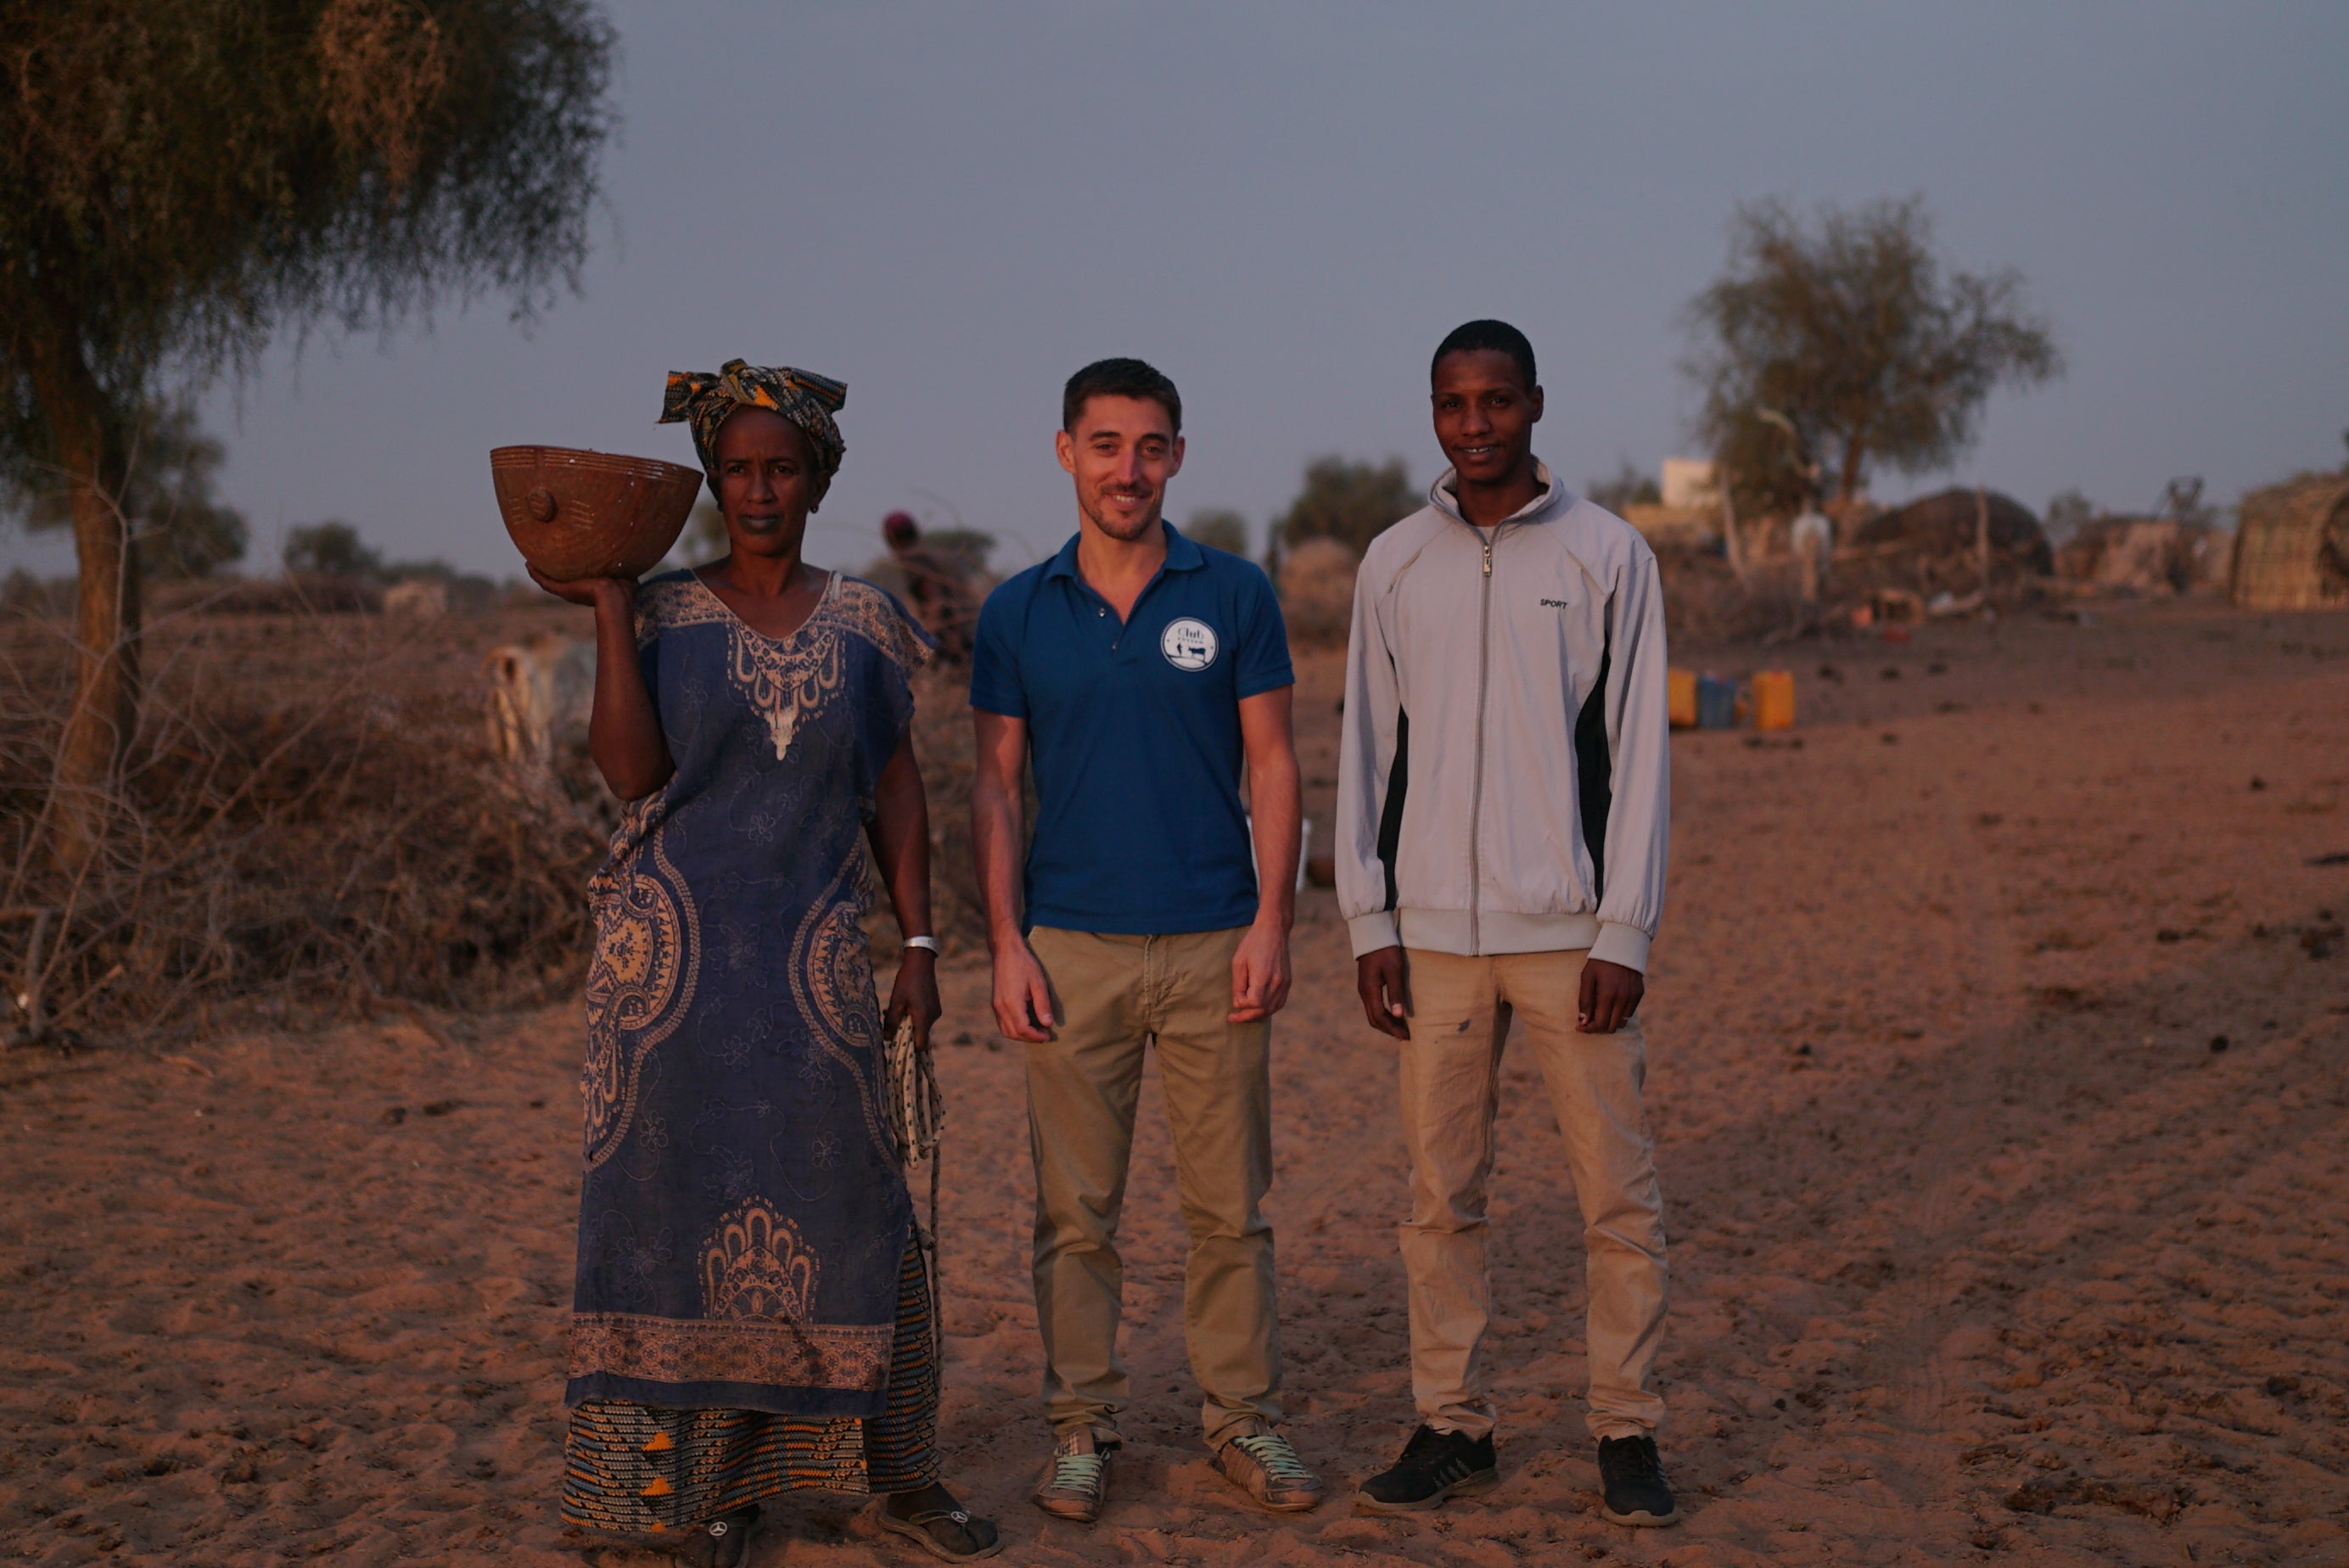 De gauche à droite : une éleveuse, Jonathan Michaud, Mamadou Fall. Crédit photo : KSDE